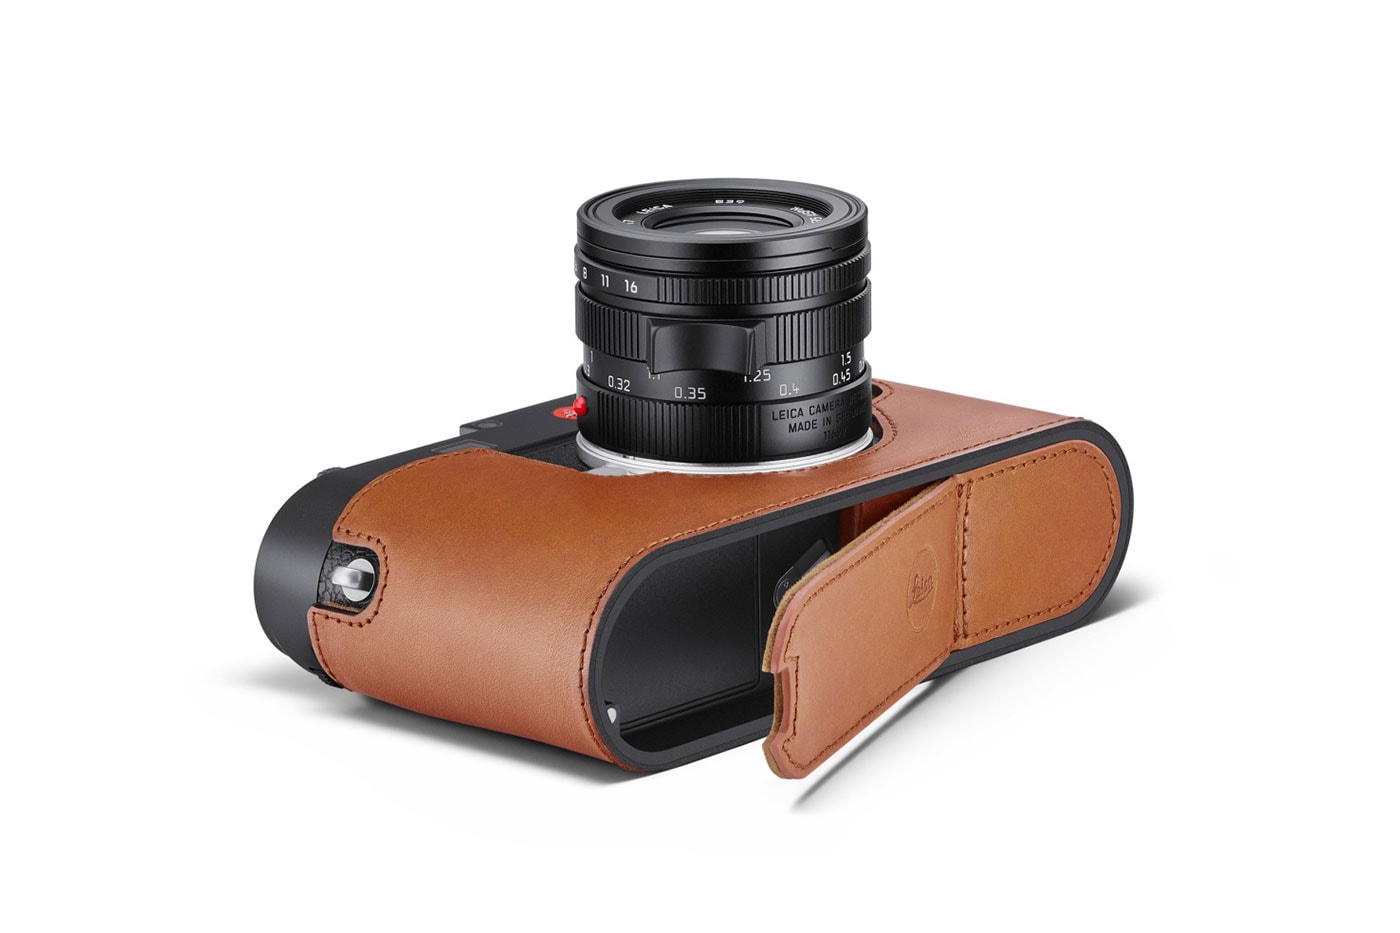 ライカの最新モデル M11の新たなリーク画像が浮上 New Leica M11 Leaked Pictures Specifications Release January 13 60MP Sensor Visoflex Electronic Shutter Black Gray Price Release Buy Info